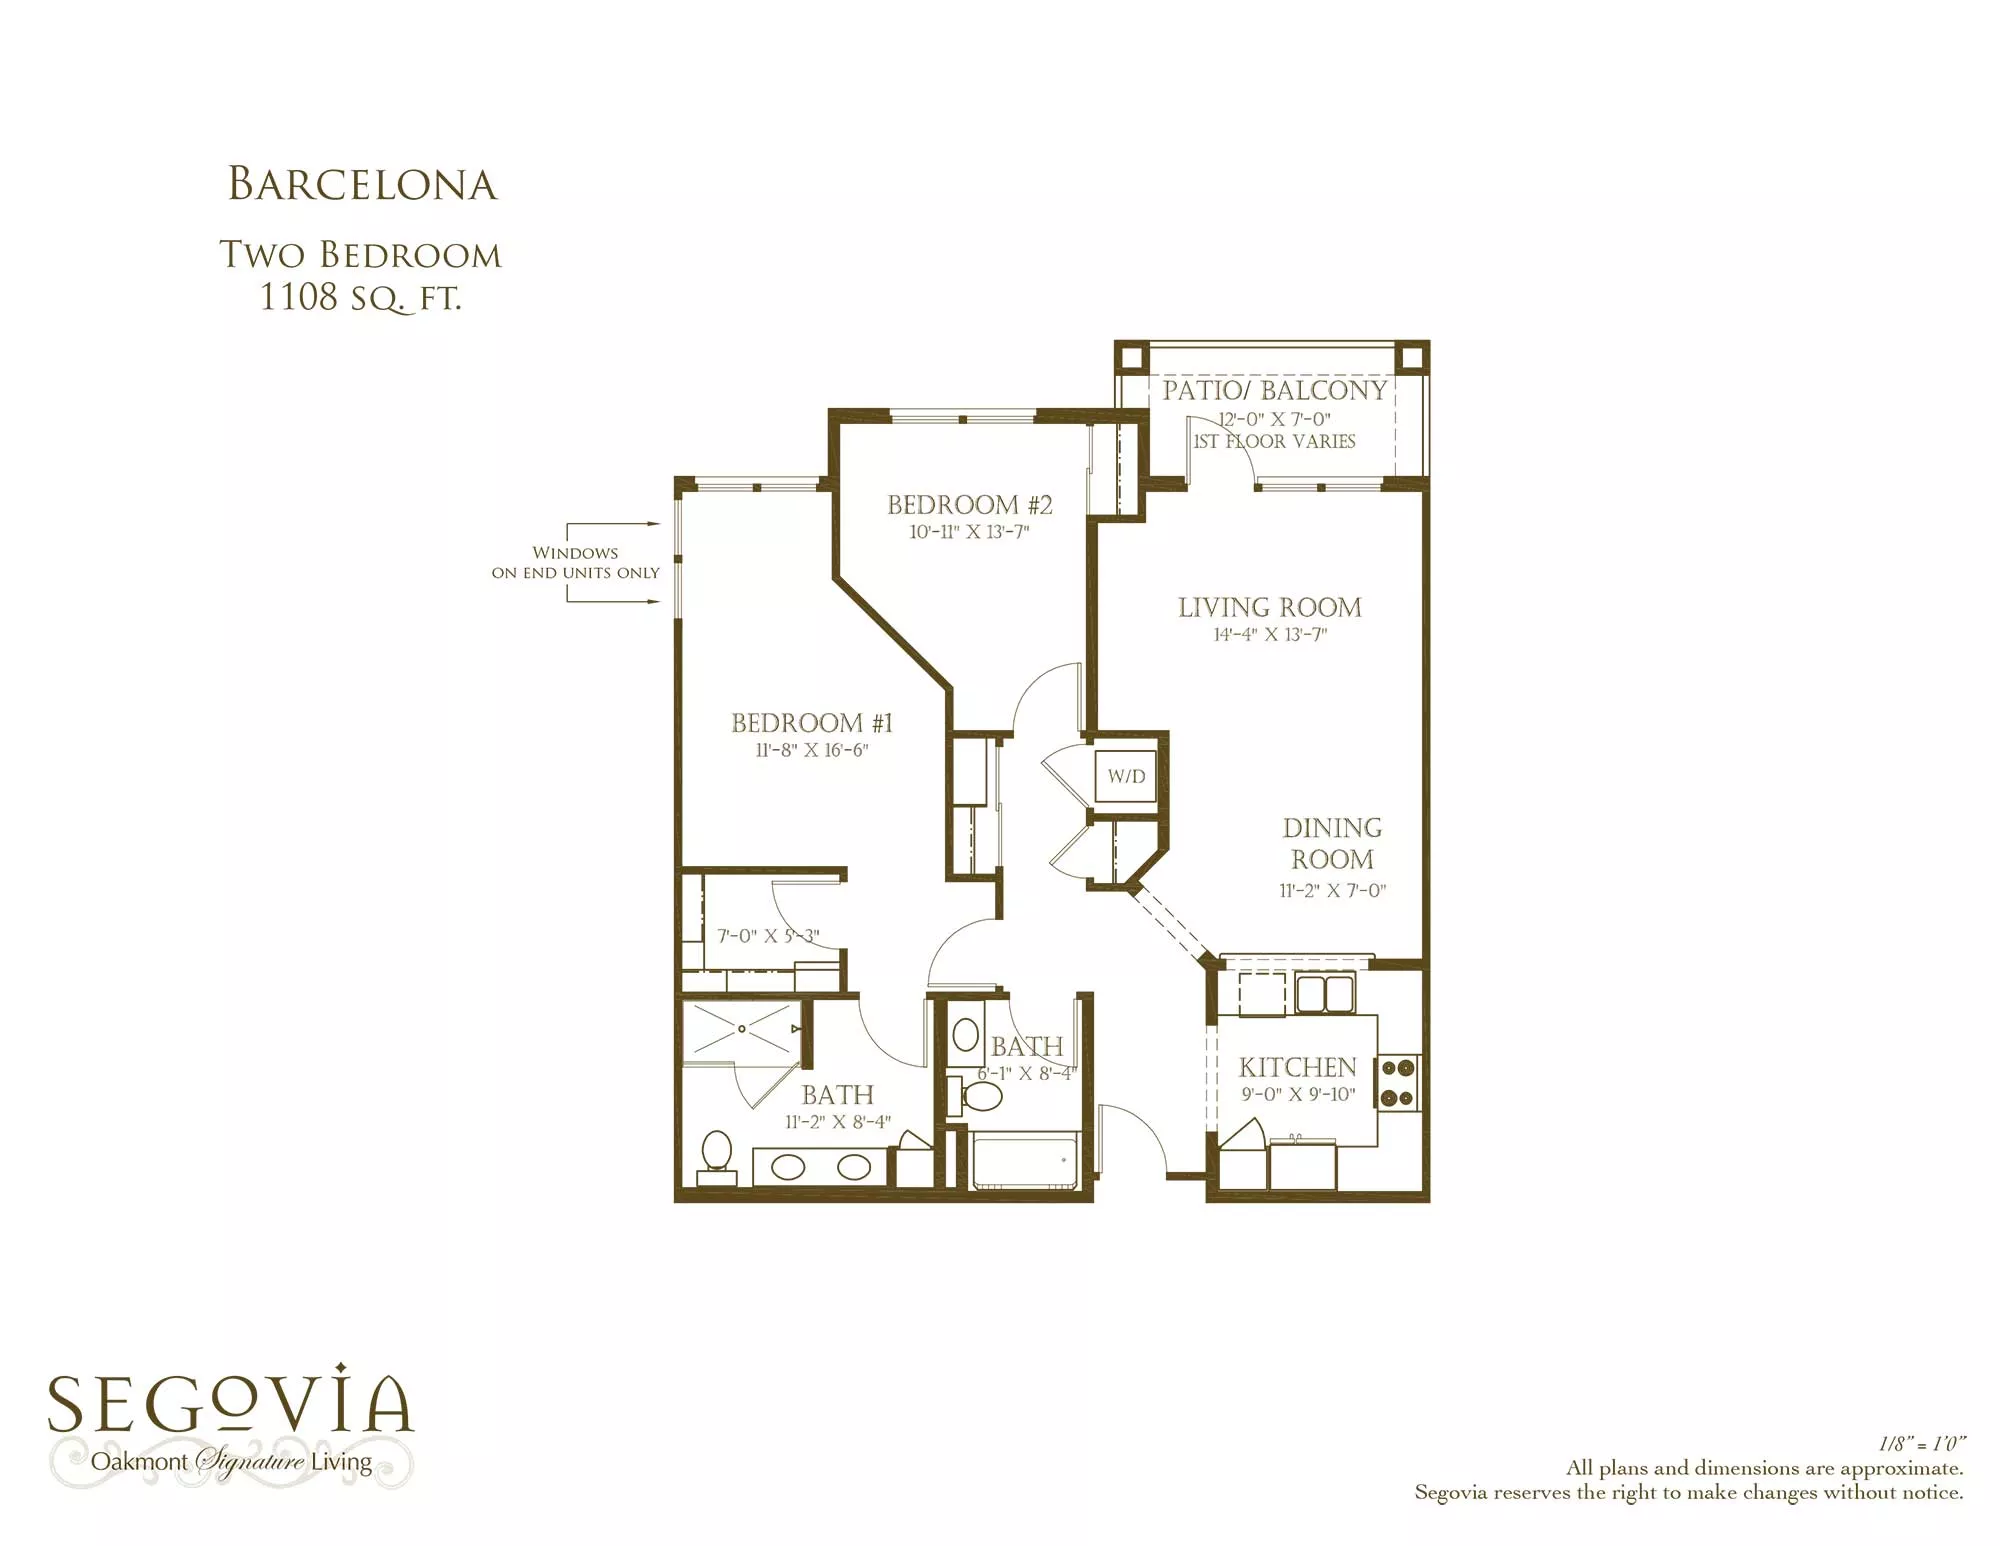 Barcelona Two bedroom floor plan